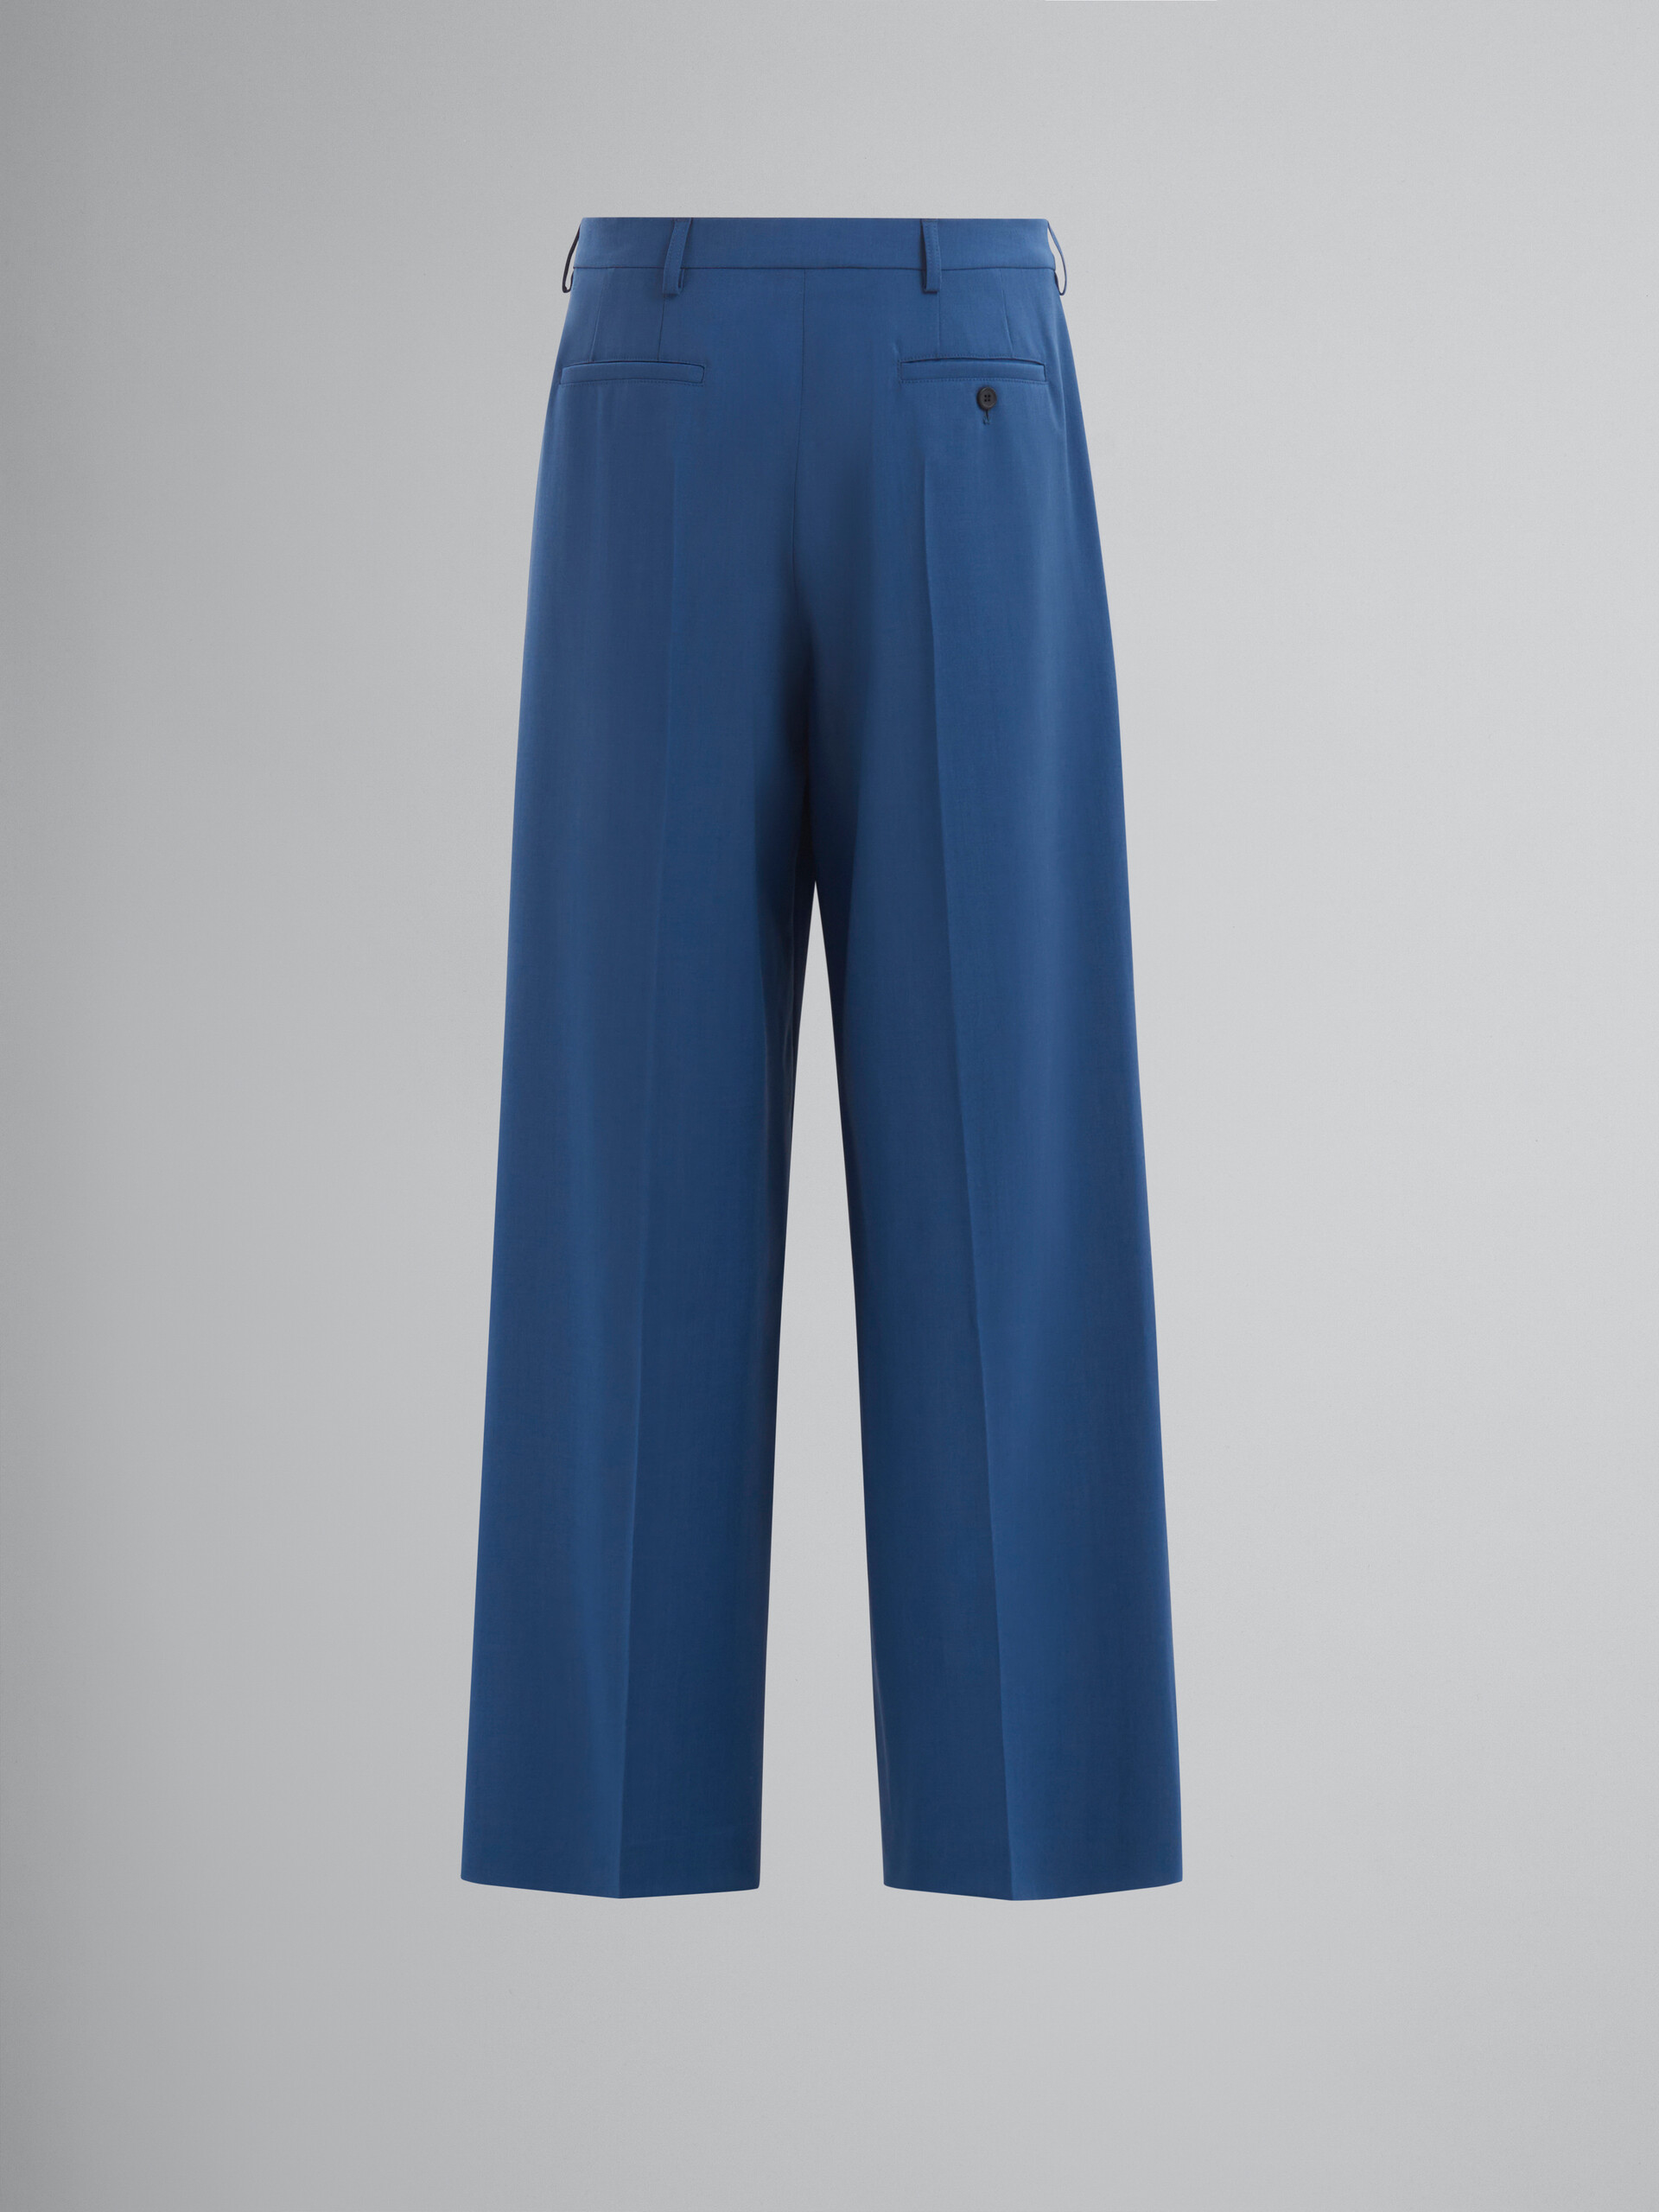 Pantalones azules de lana y mohair con pliegues - Pantalones - Image 2